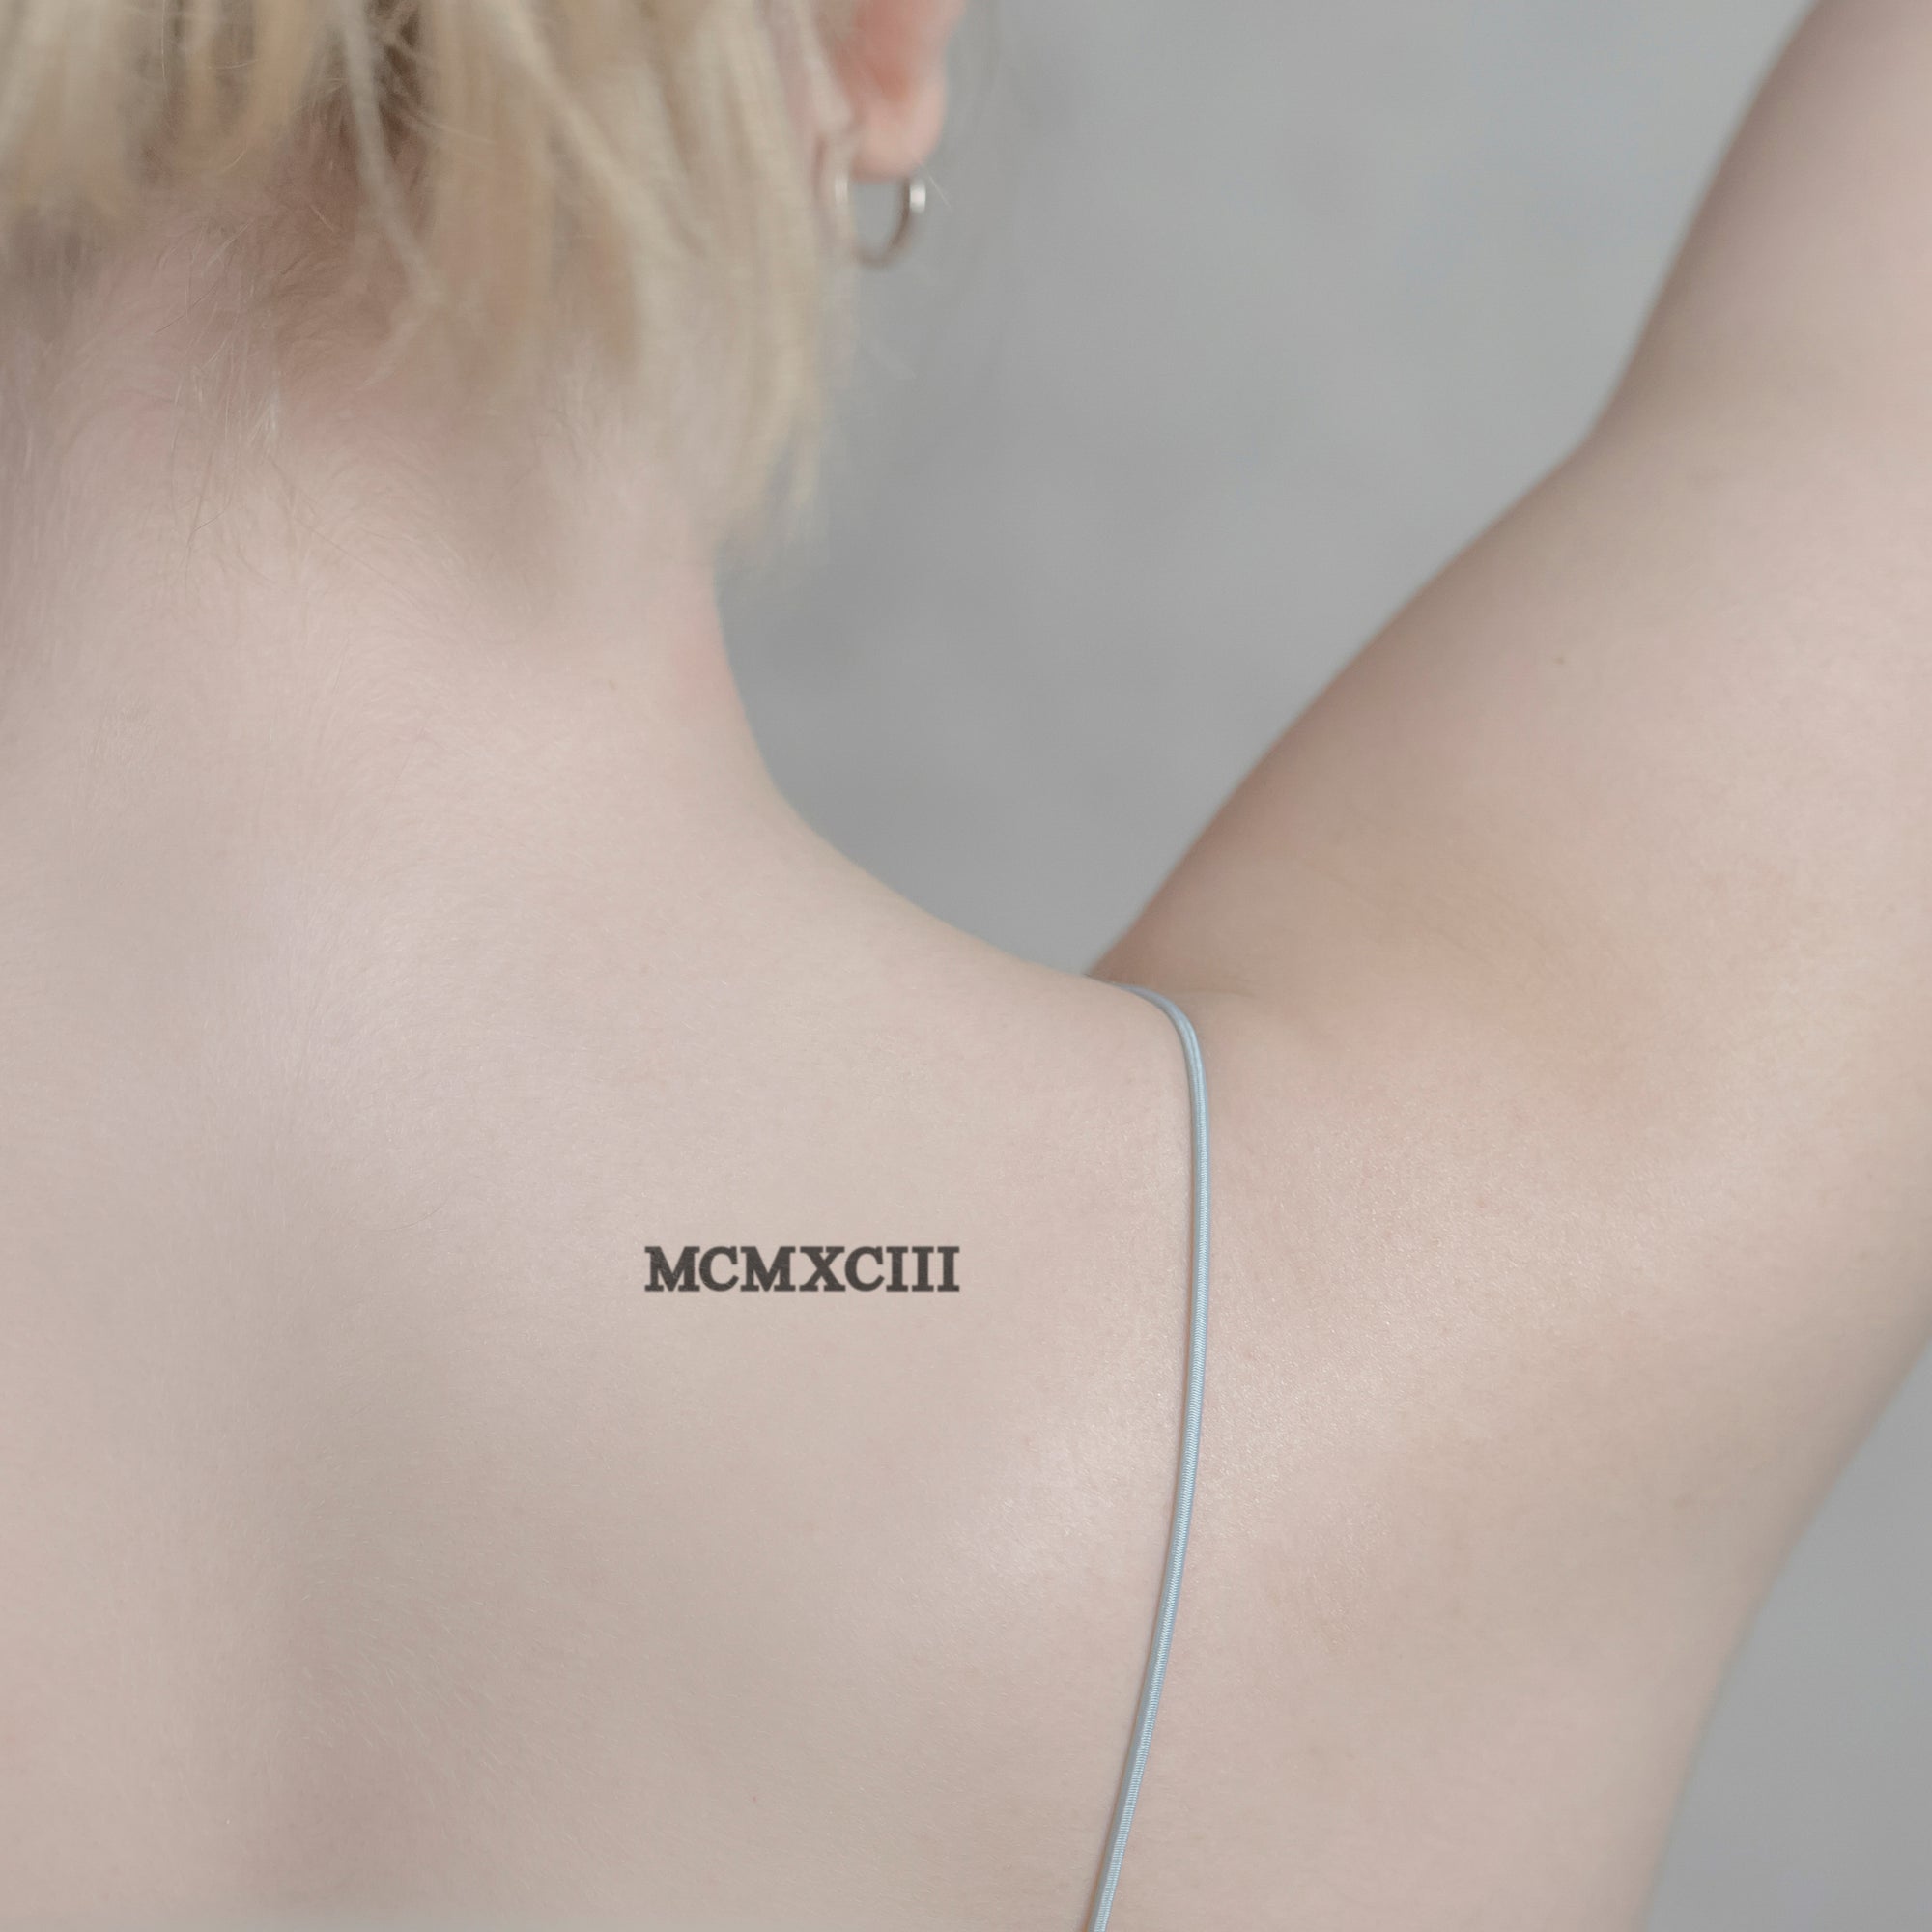 Zahlen Tattoo Römische Zahl MCMXCIII (1993) von minink, der Marke für temporäre Tattoos.